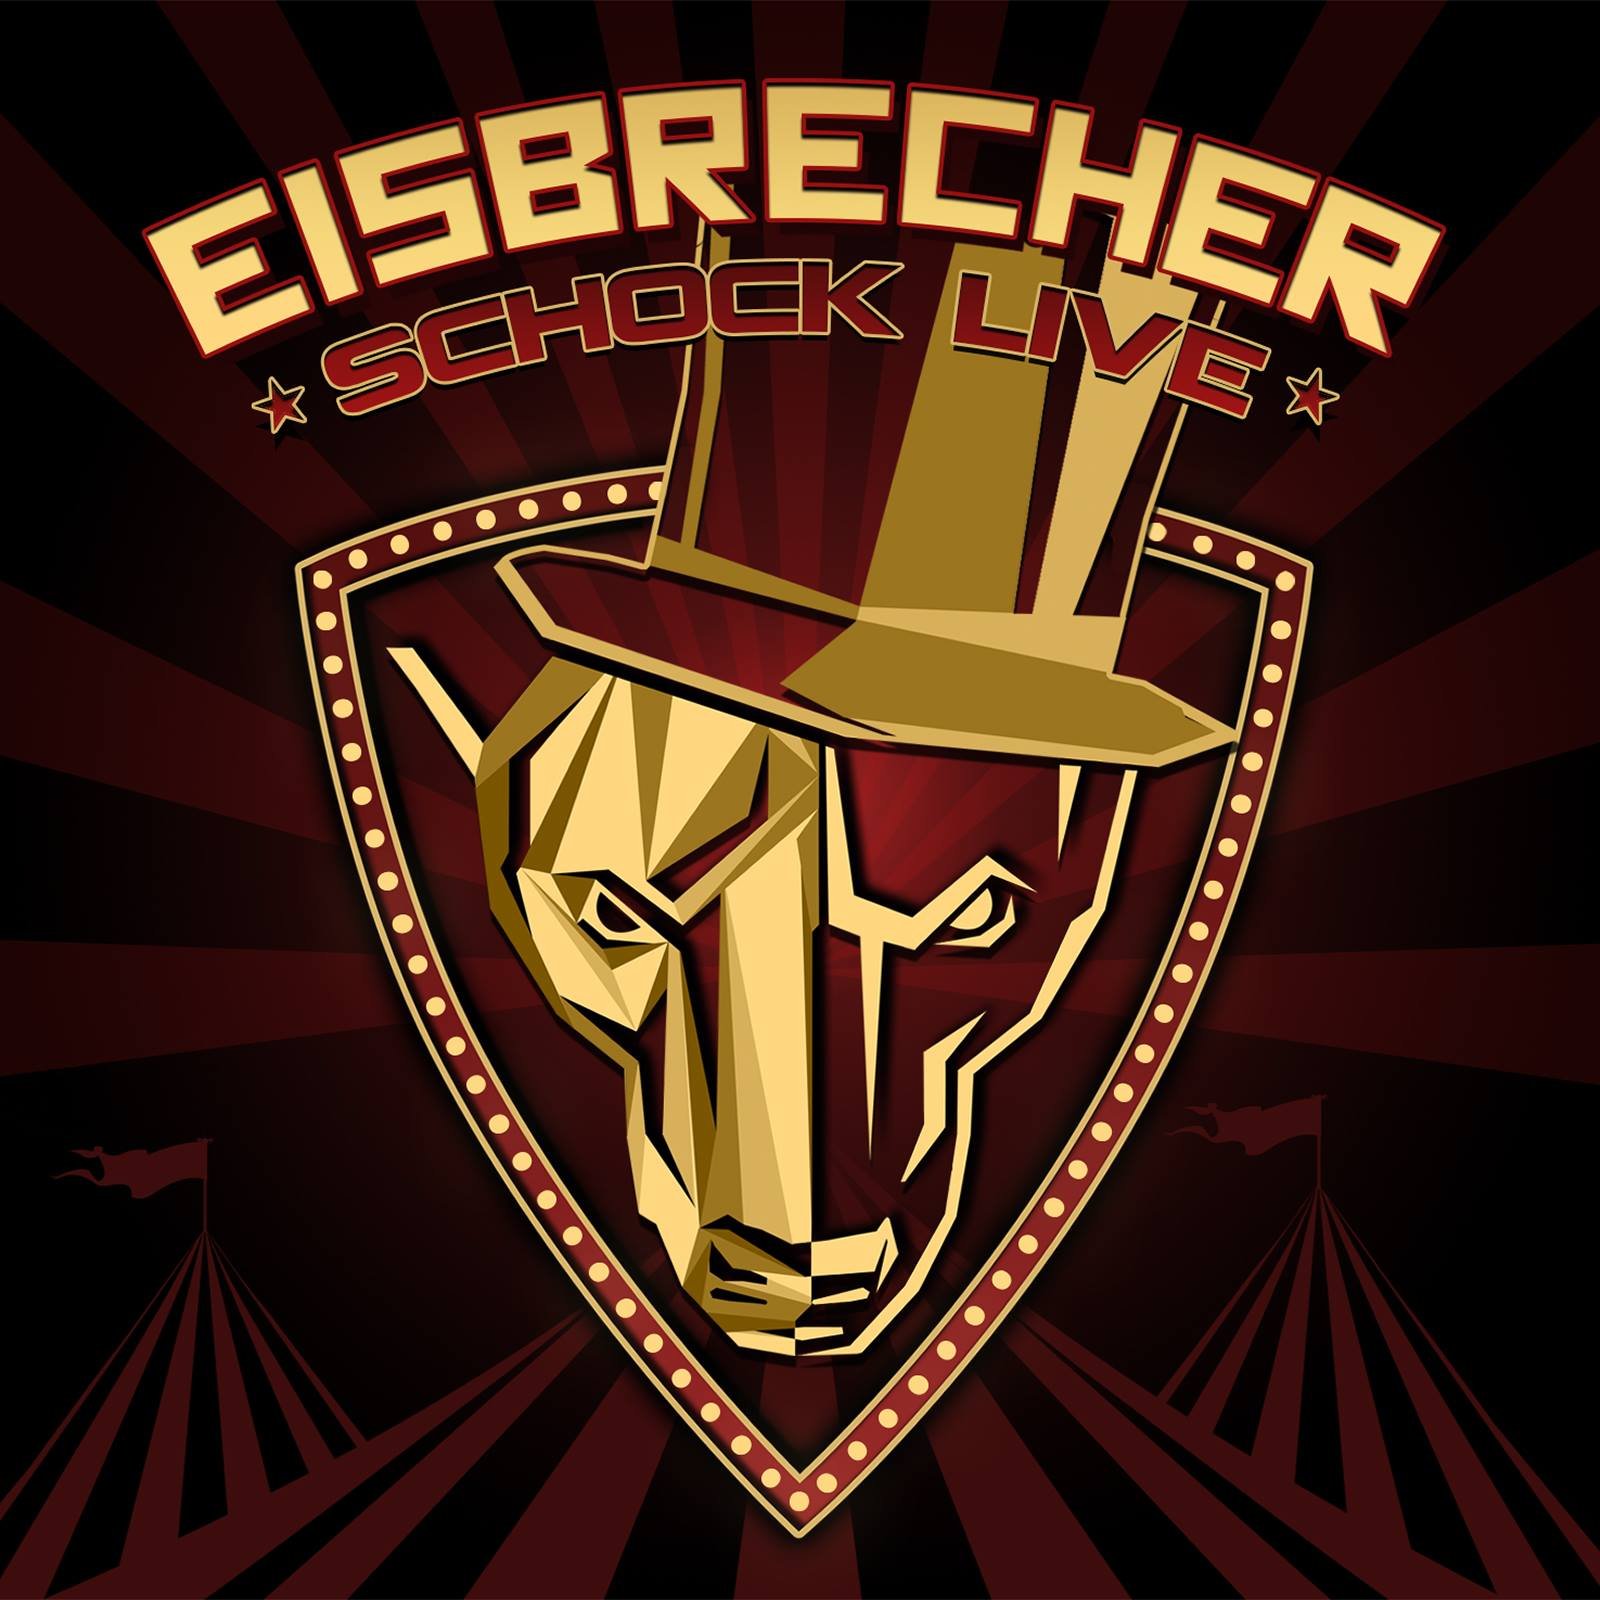 Eisbrecher rot. Айсбрехер группа. Eisbrecher лого. Eisbrecher Shock обложка. Eisbrecher логотип группы.